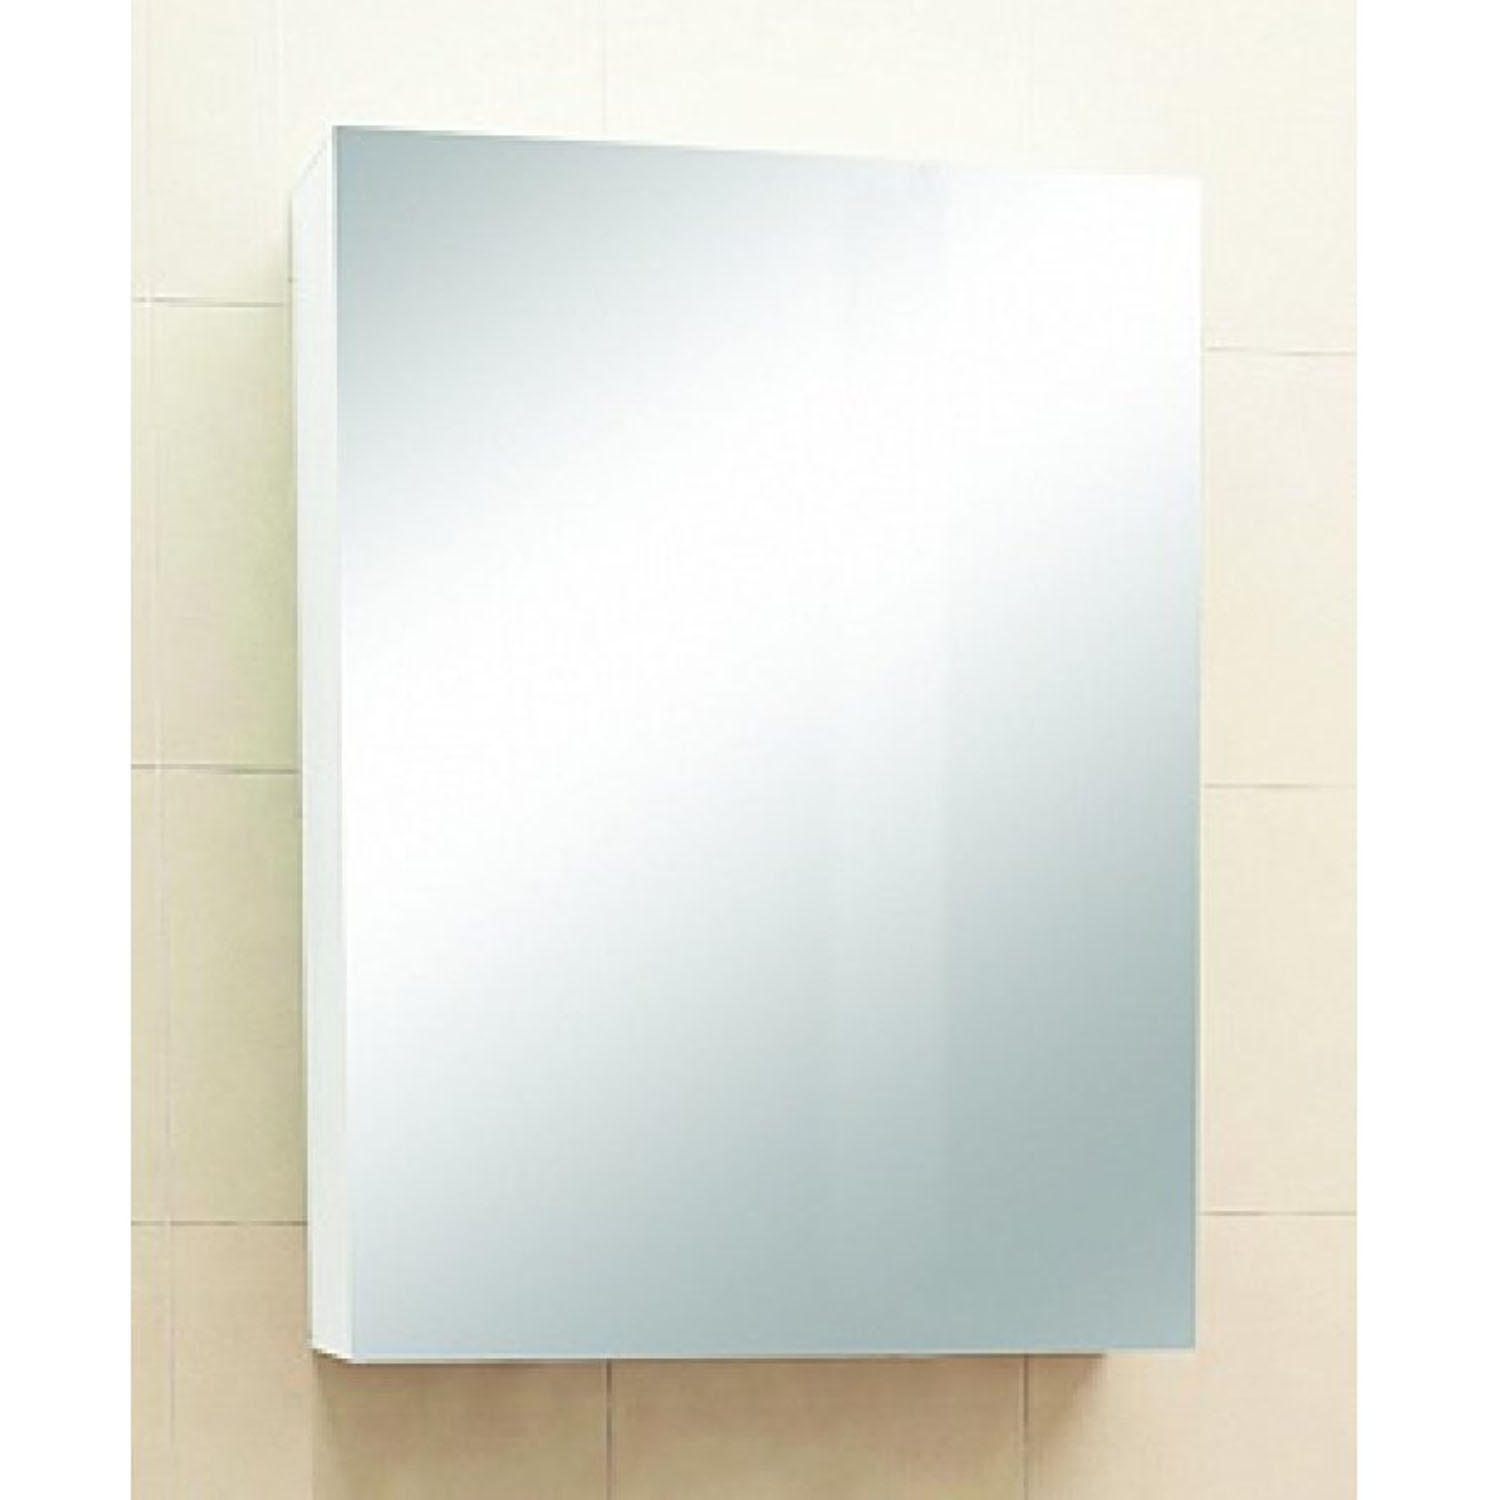 Зеркало в ванную 50 см. Зеркало-шкаф "solo" 50 см, белый 25761. Зеркальный шкаф Merkana Магнолия 60. Зеркало-шкаф "Соло-55" (белый) 525х720х150. Шкаф Merkana навесной 60 см.